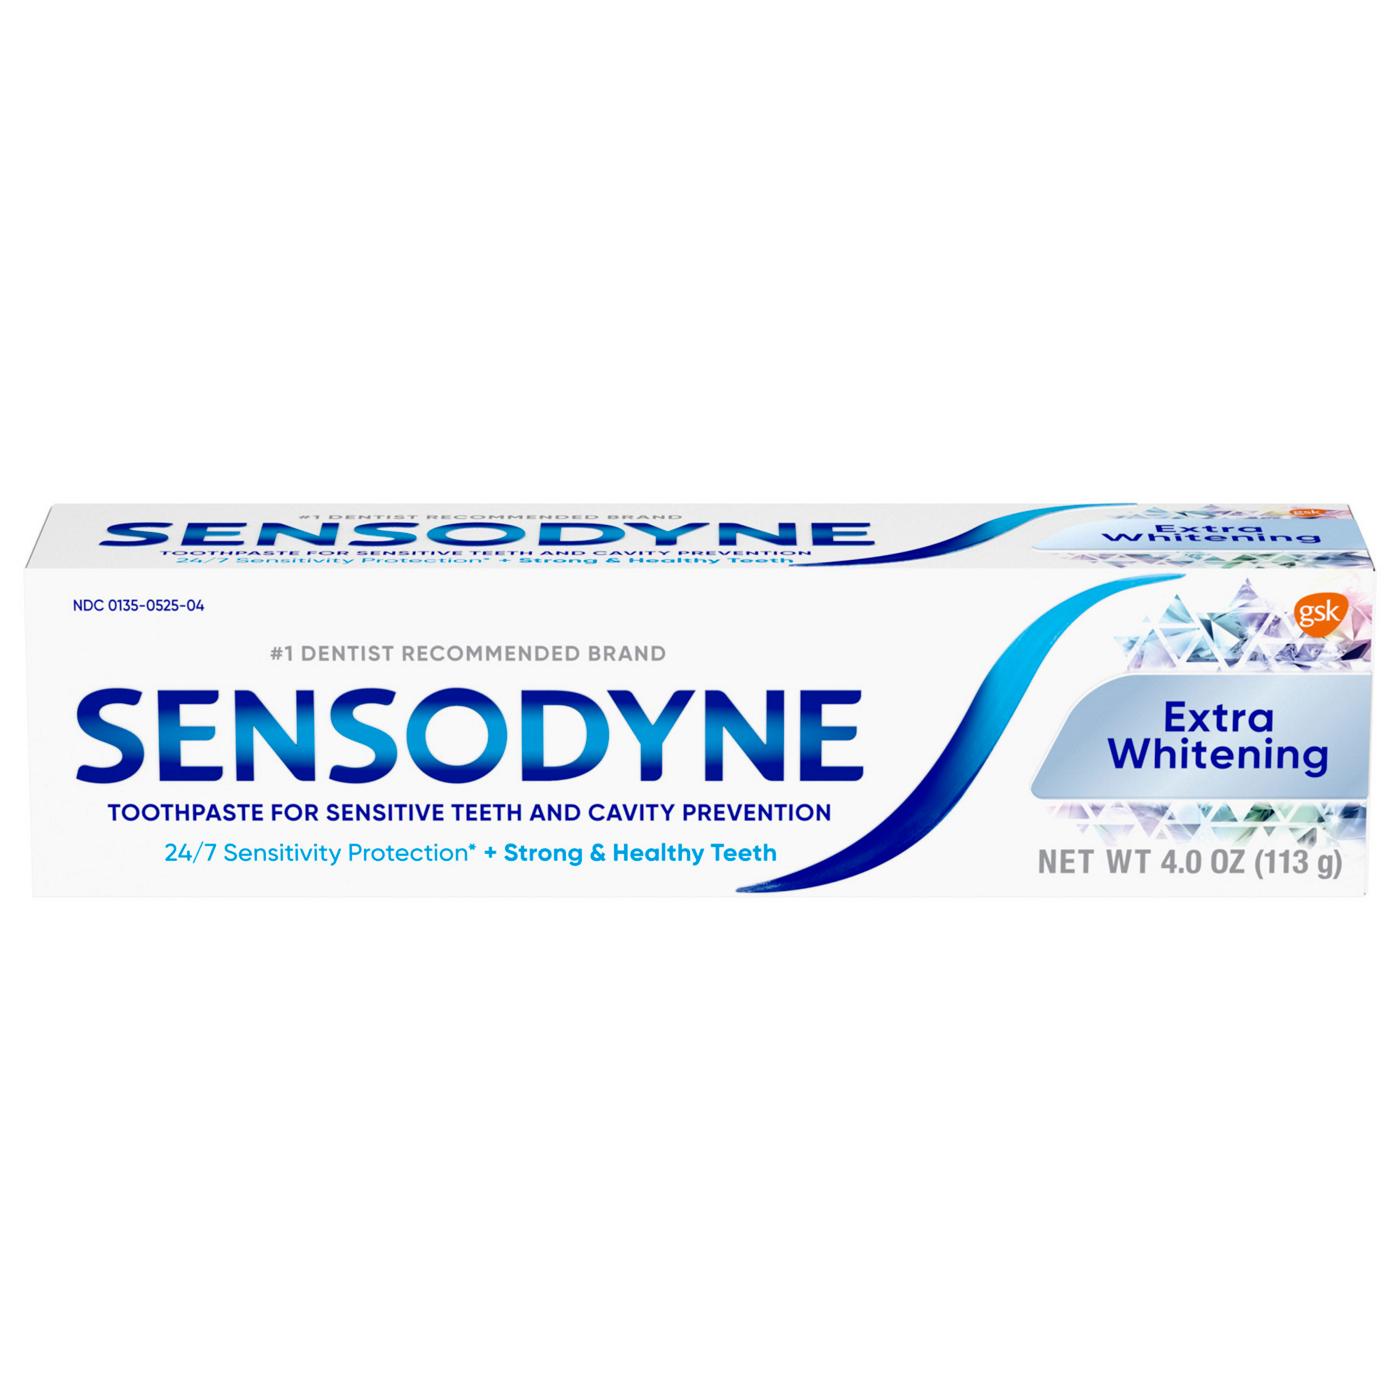 Sensodyne Sensitive Toothpaste - Extra Whitening; image 1 of 8